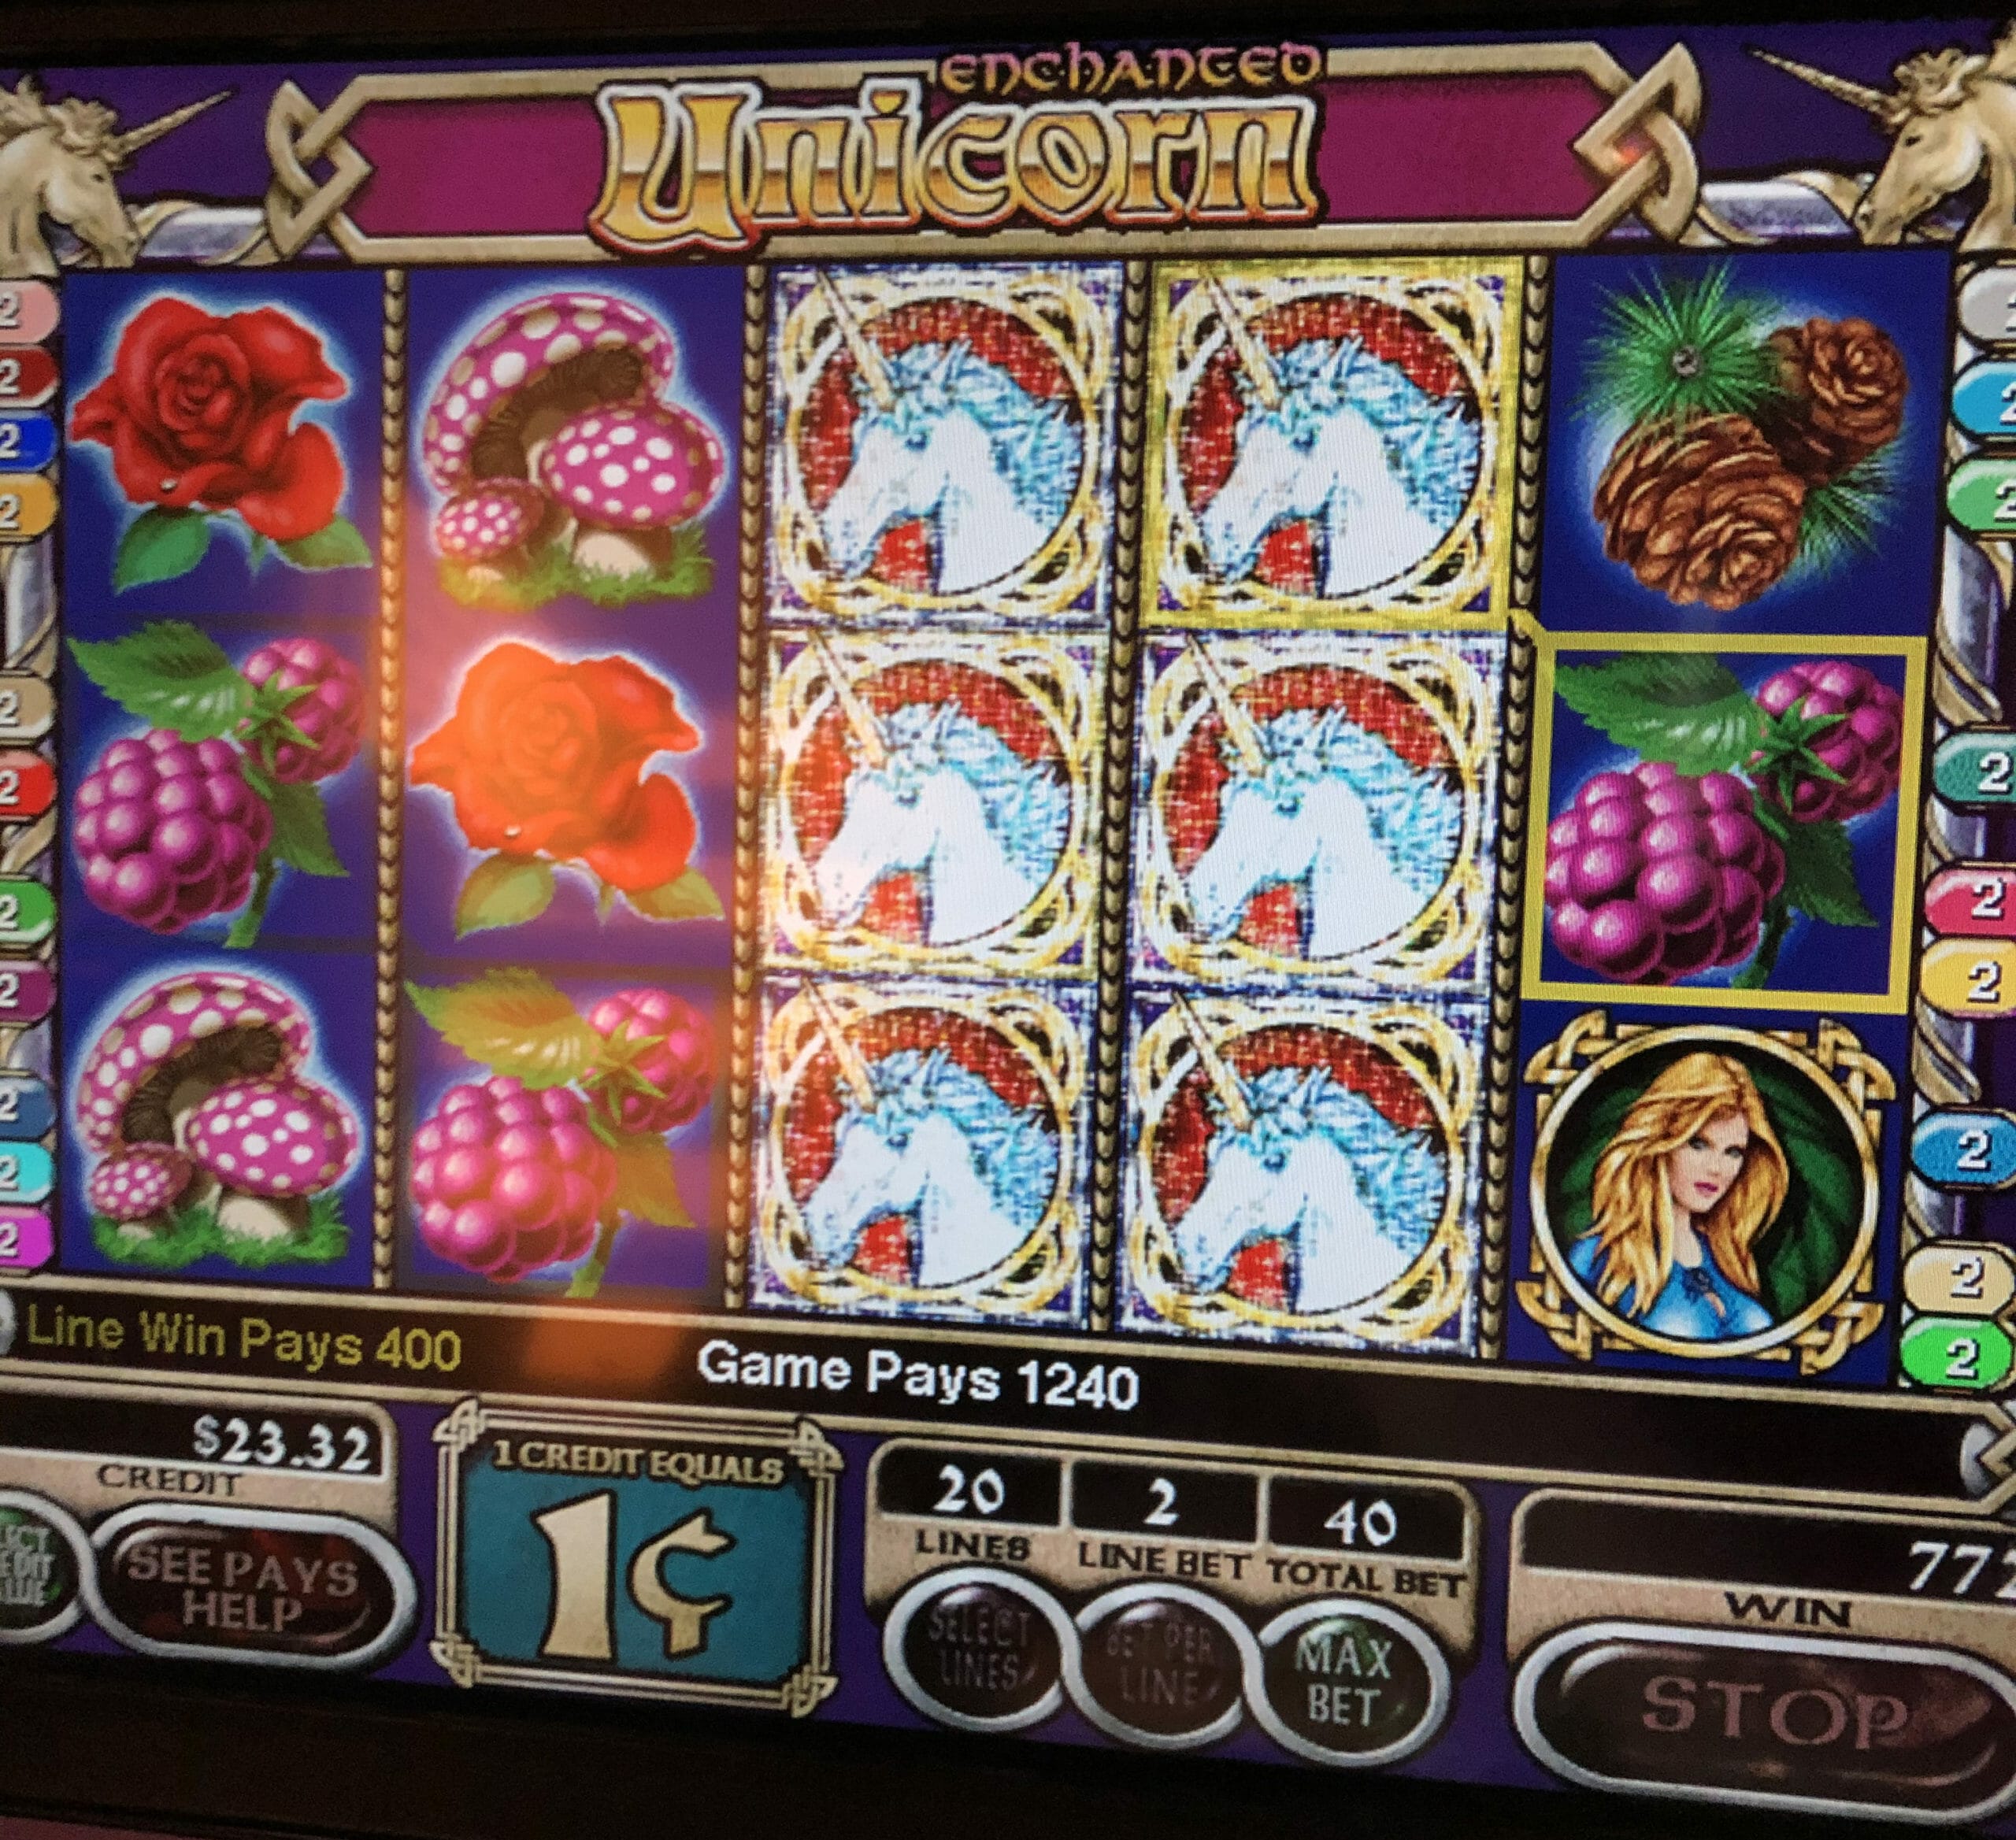 T_site_logo - Bluewater Resort And Casino Slot Machine